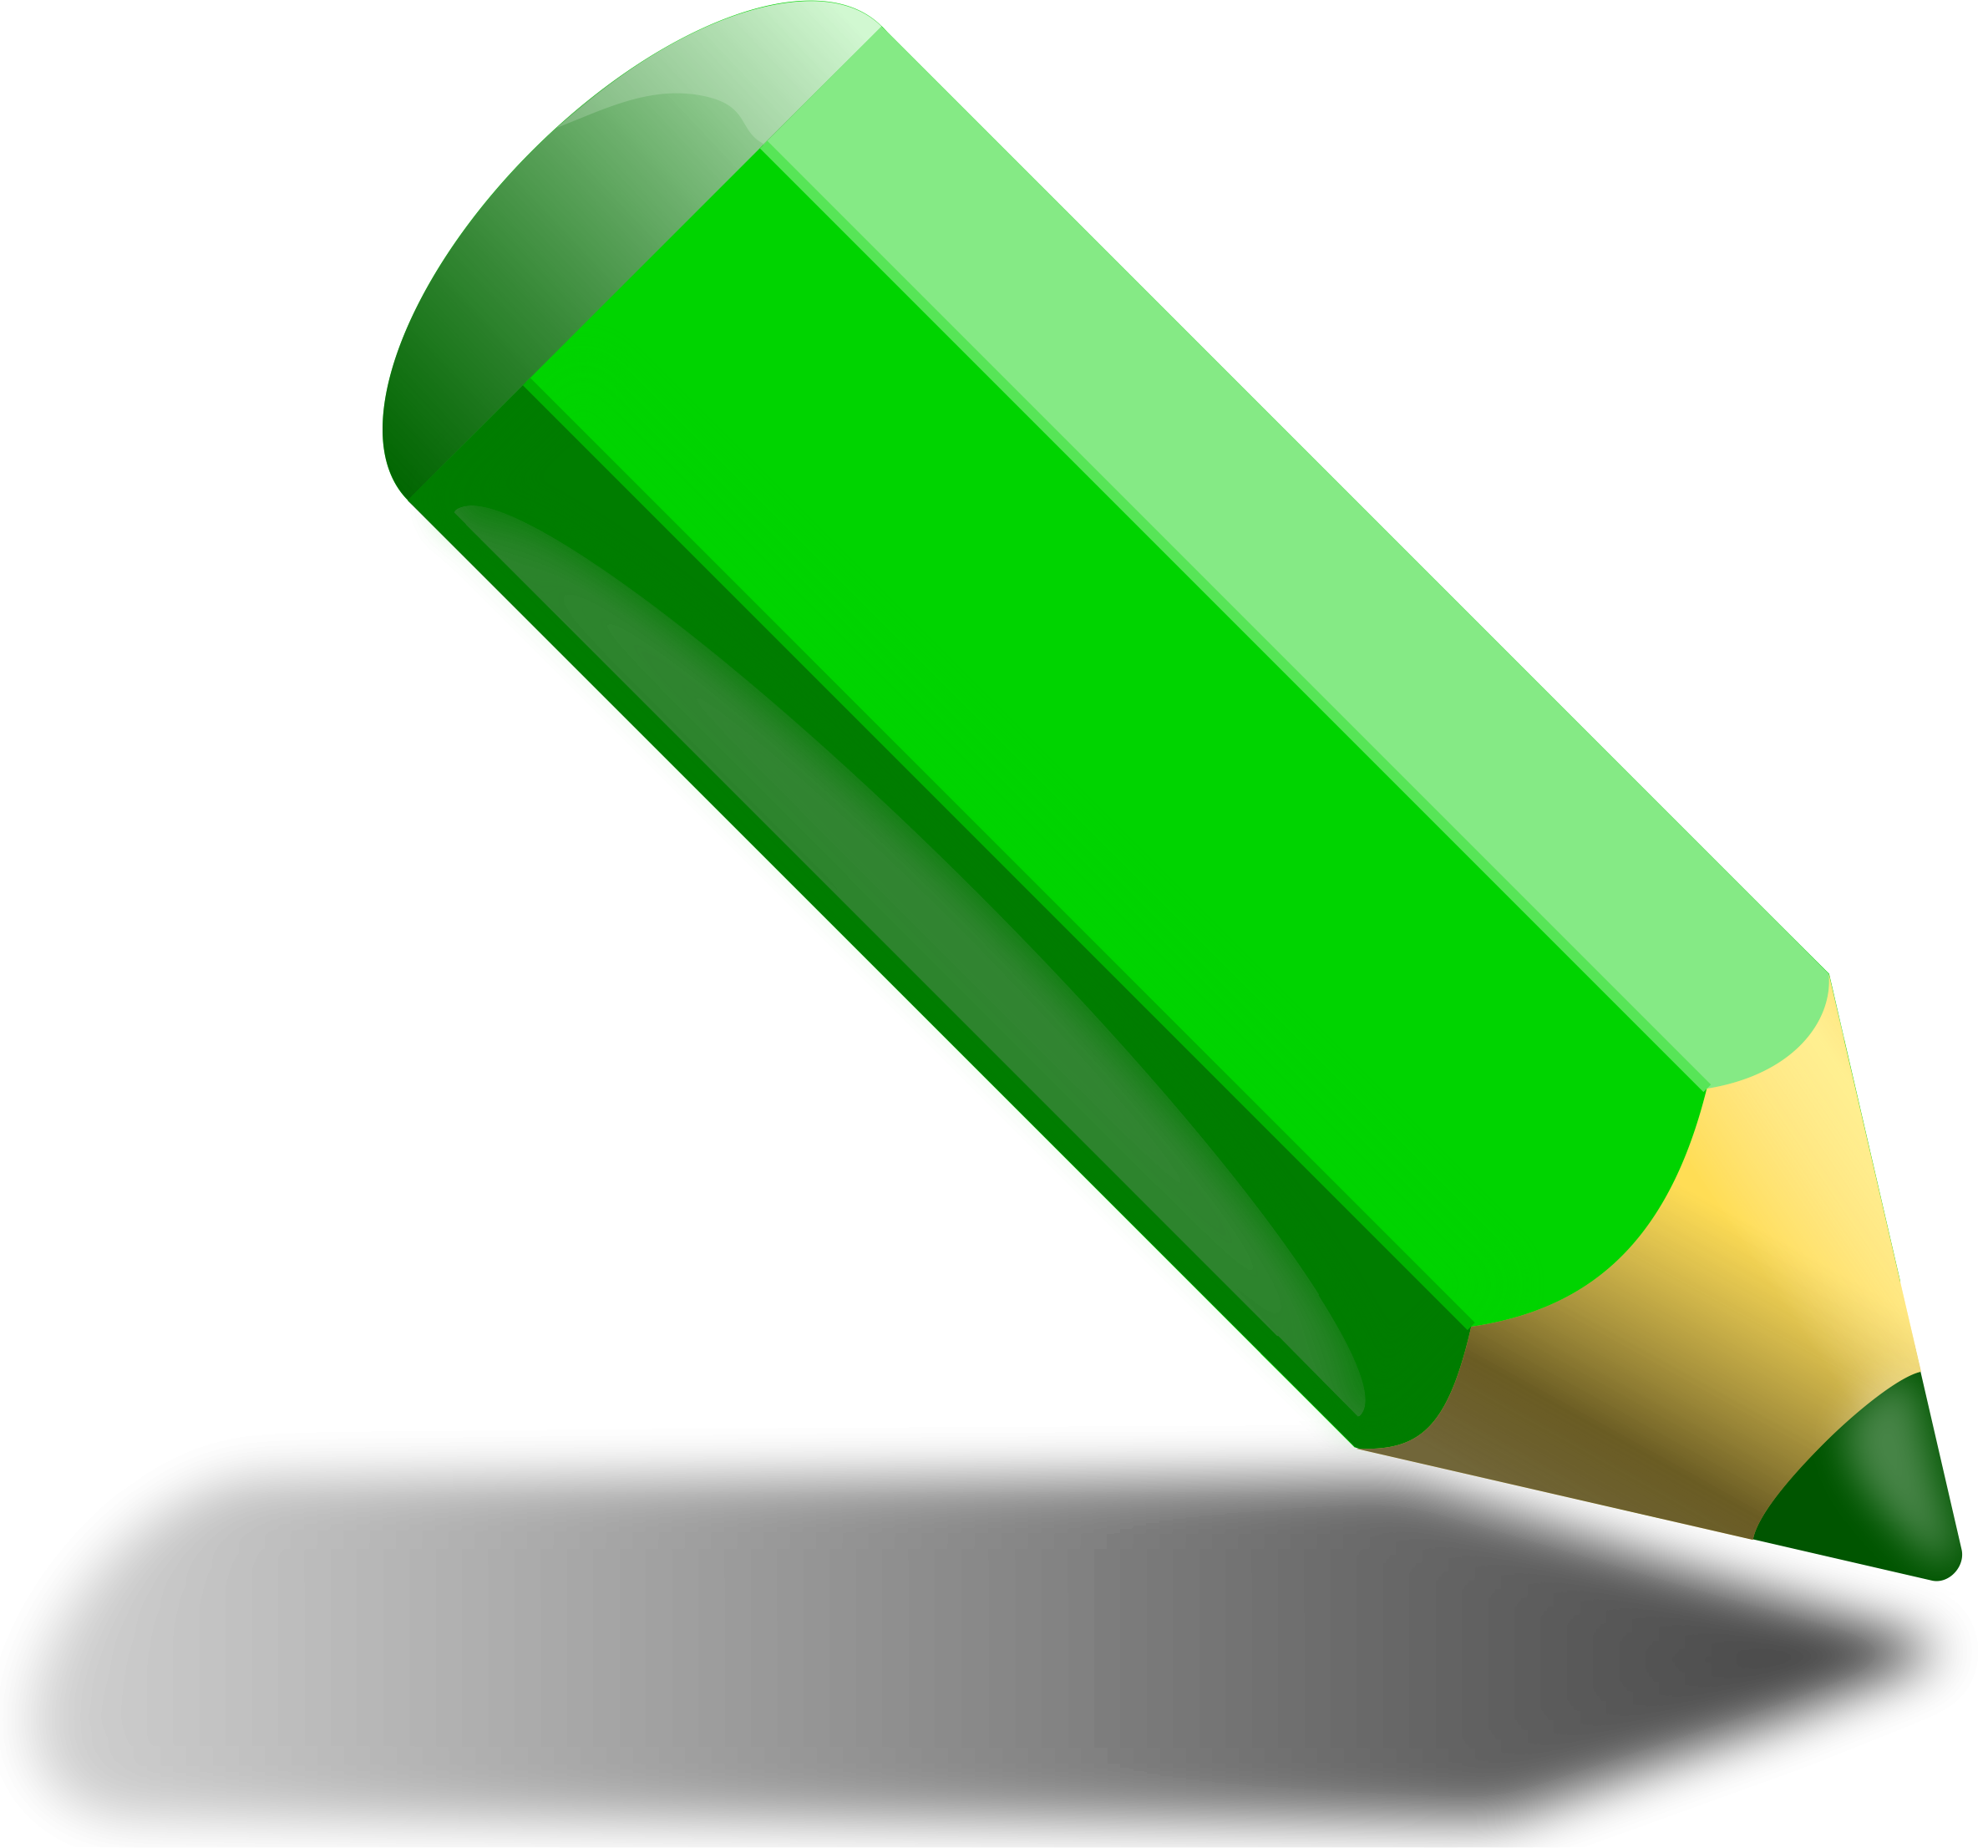 Pencil download. Зеленый карандаш. Зеленый карандаш для рисования. Зеленый карандаш для детей. Цветные карандаши зеленые.